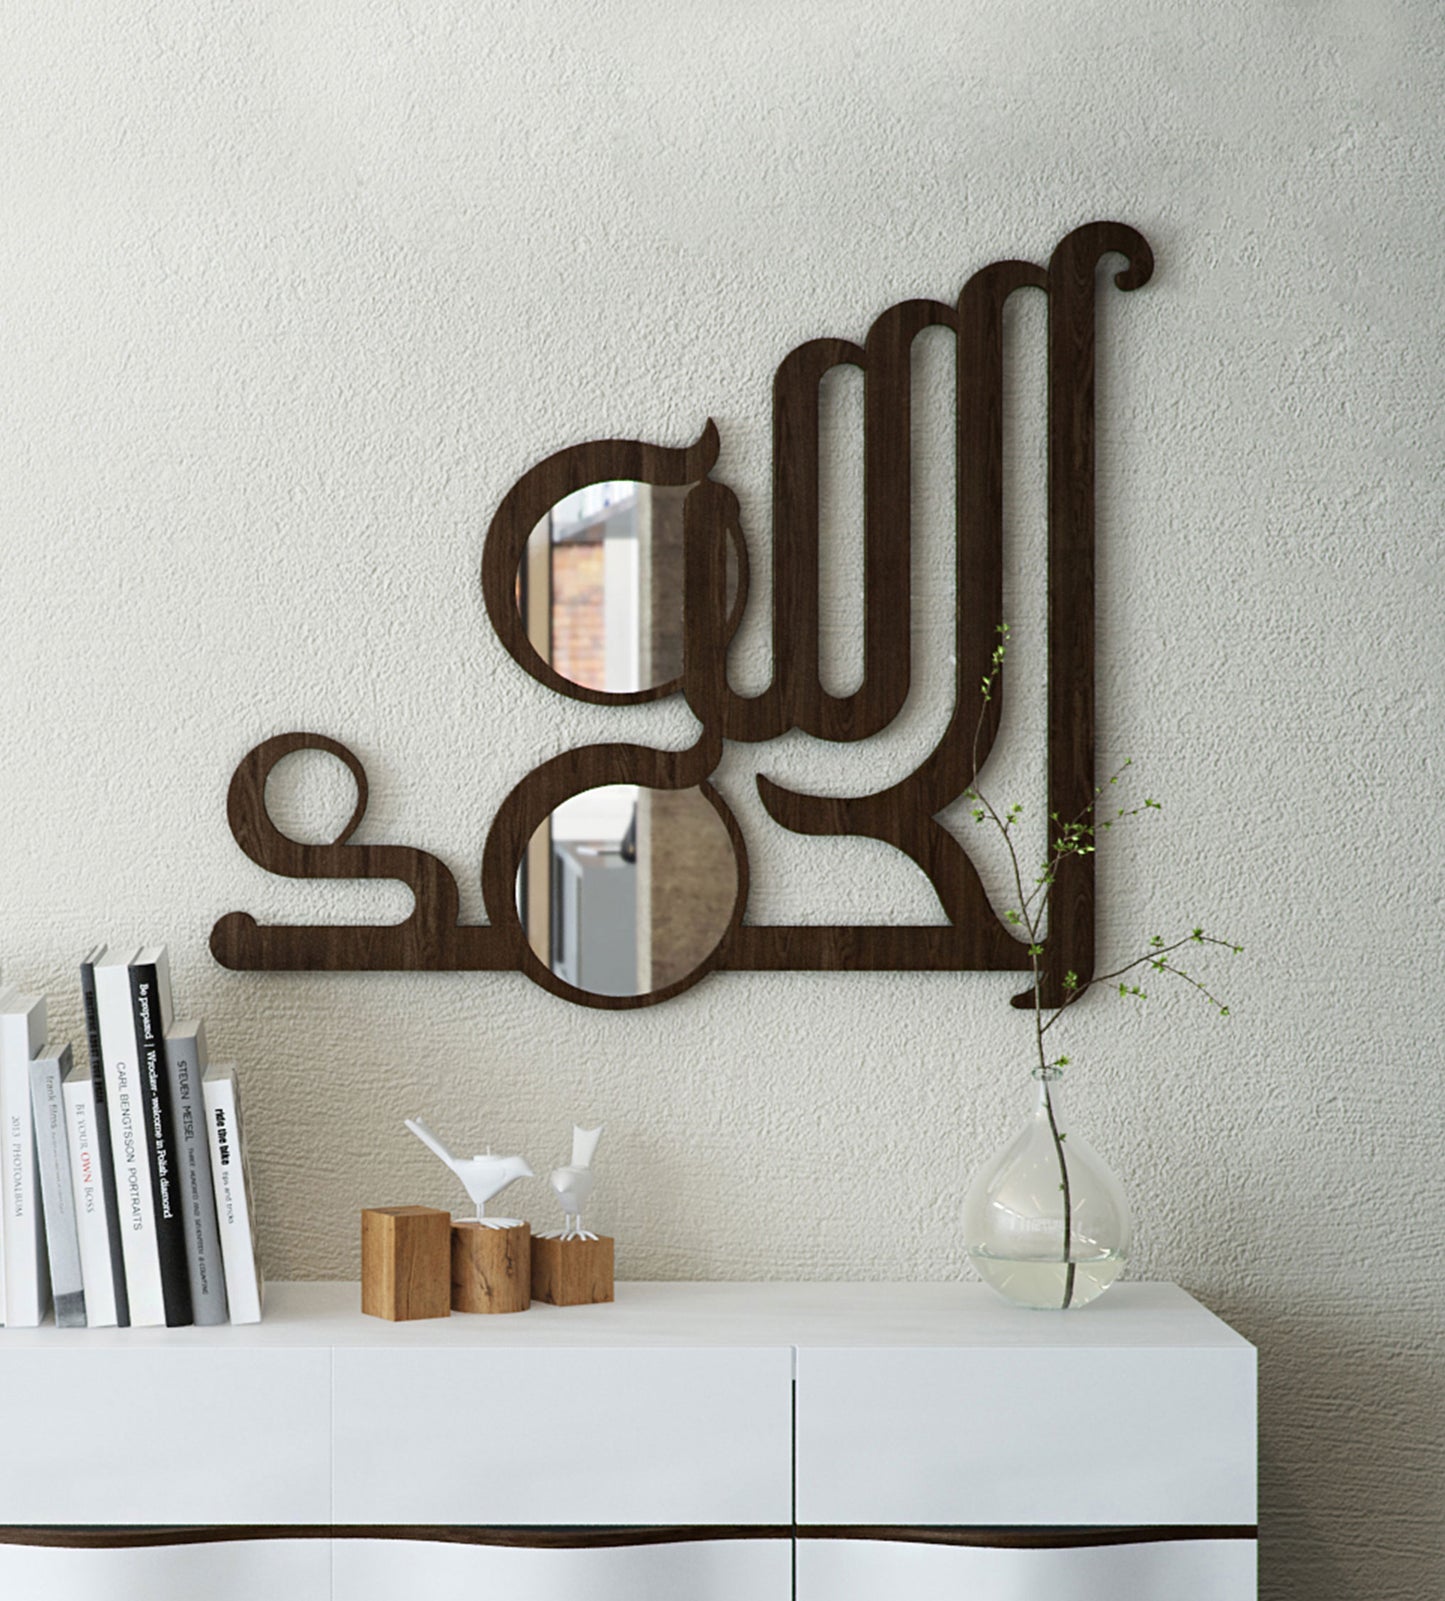 Al hamdullilah brown wood wall mirror in Arabic calligraphy